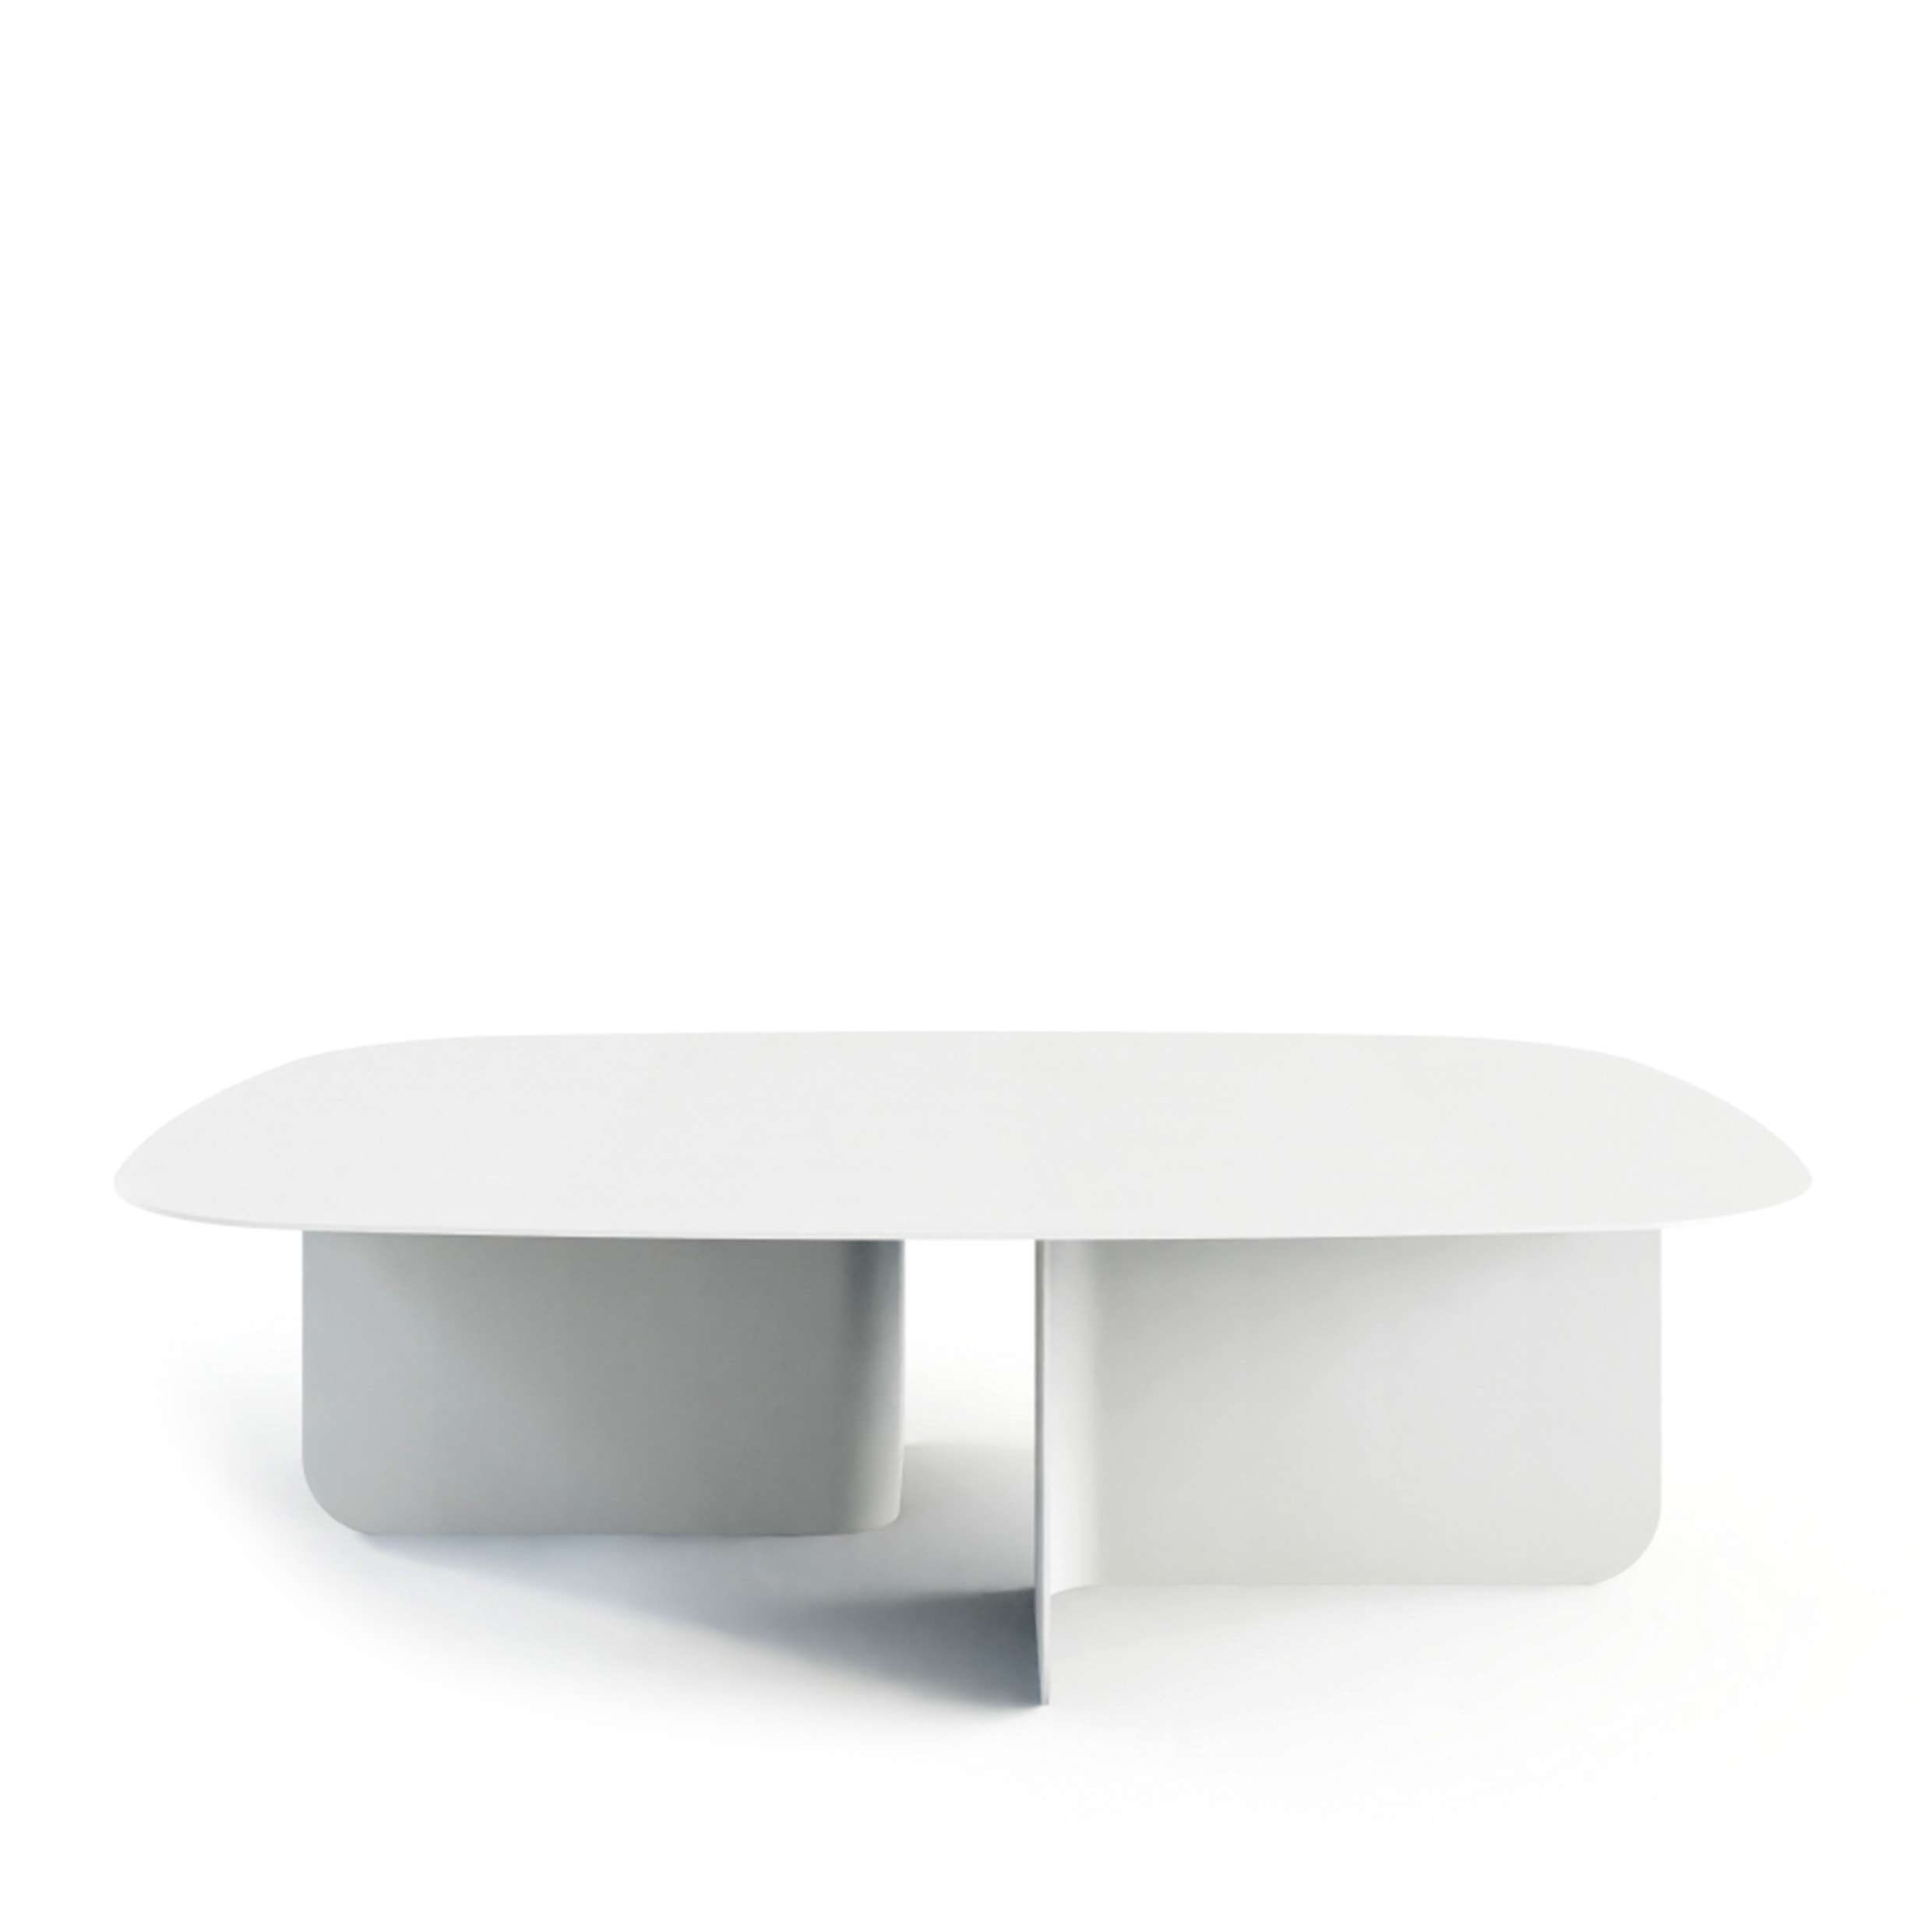 METALLBUDE // LIVIA - COFFEE TABLE - WHITE